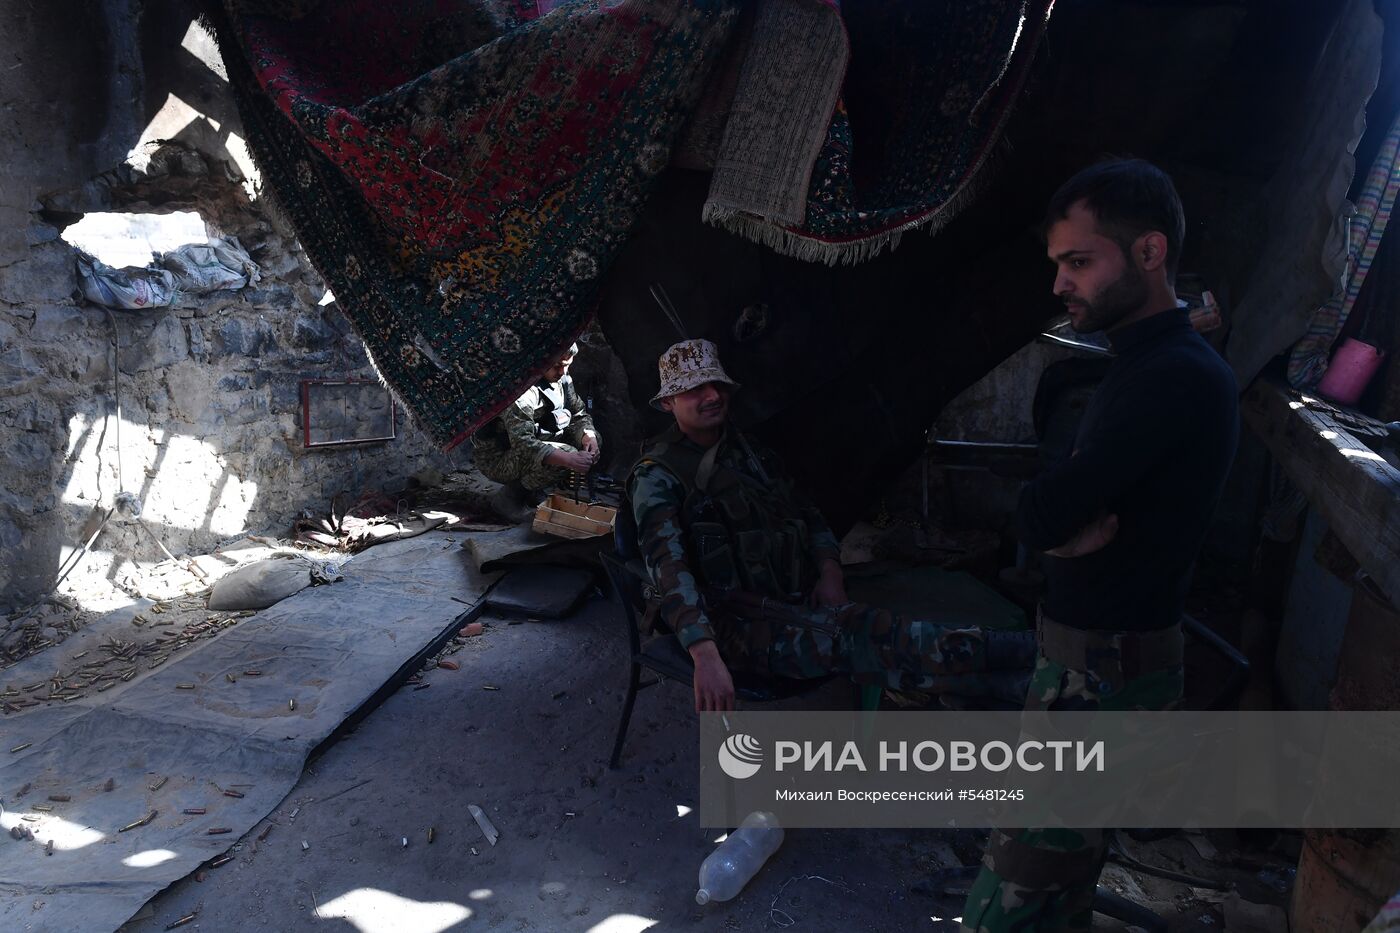 Ситуация в районе лагеря беженцев Ярмук на юге Дамаска